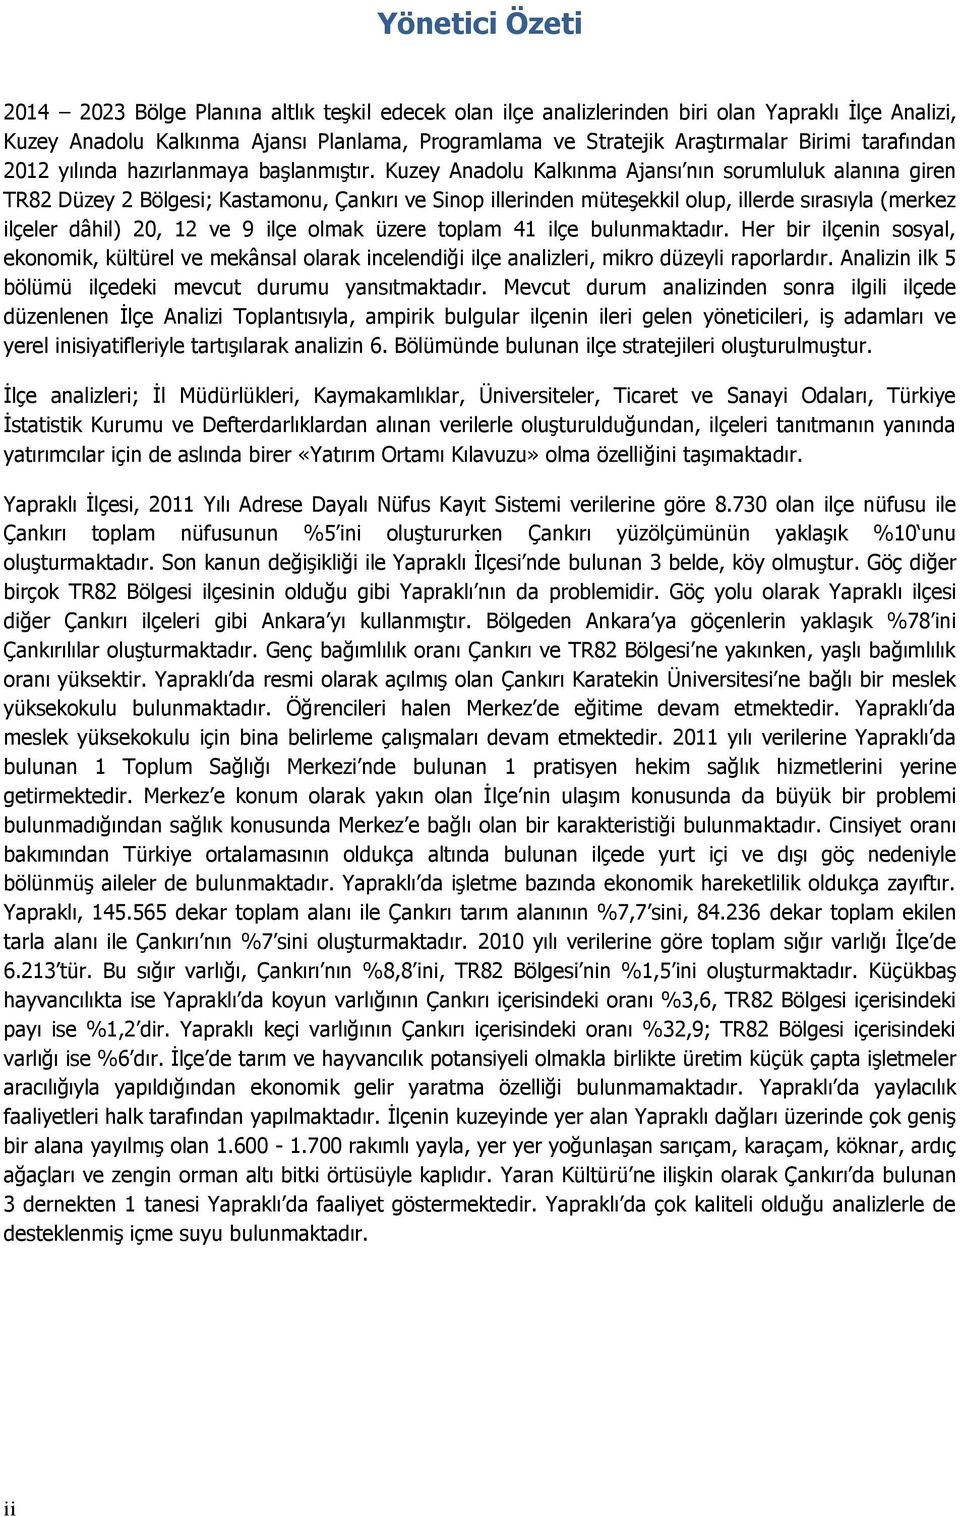 Kuzey Anadolu Kalkınma Ajansı nın sorumluluk alanına giren TR82 Düzey 2 Bölgesi; Kastamonu, Çankırı ve Sinop illerinden müteşekkil olup, illerde sırasıyla (merkez ilçeler dâhil) 20, 12 ve 9 ilçe